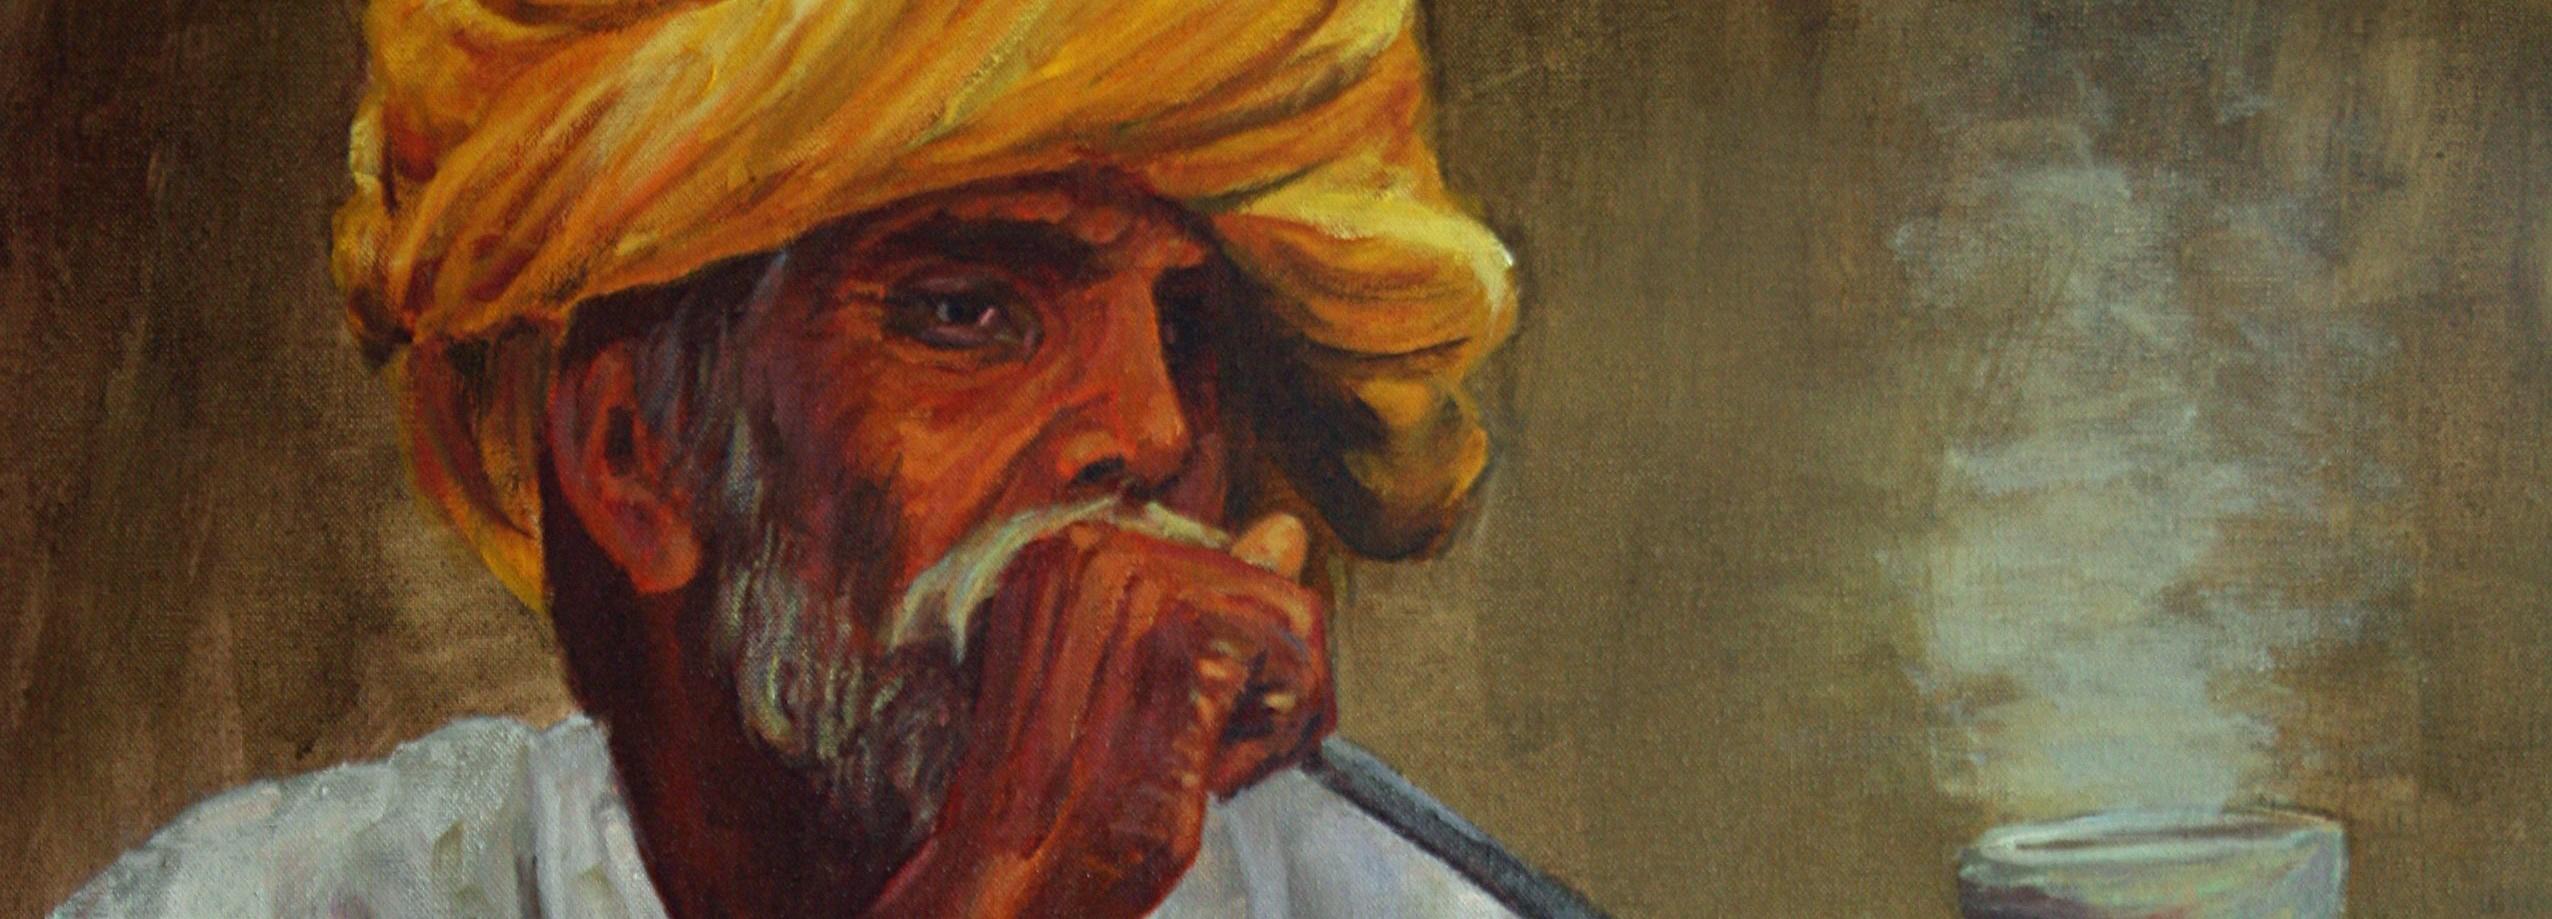 Fumador hindú - Painting by José Luis Pagador Ponce